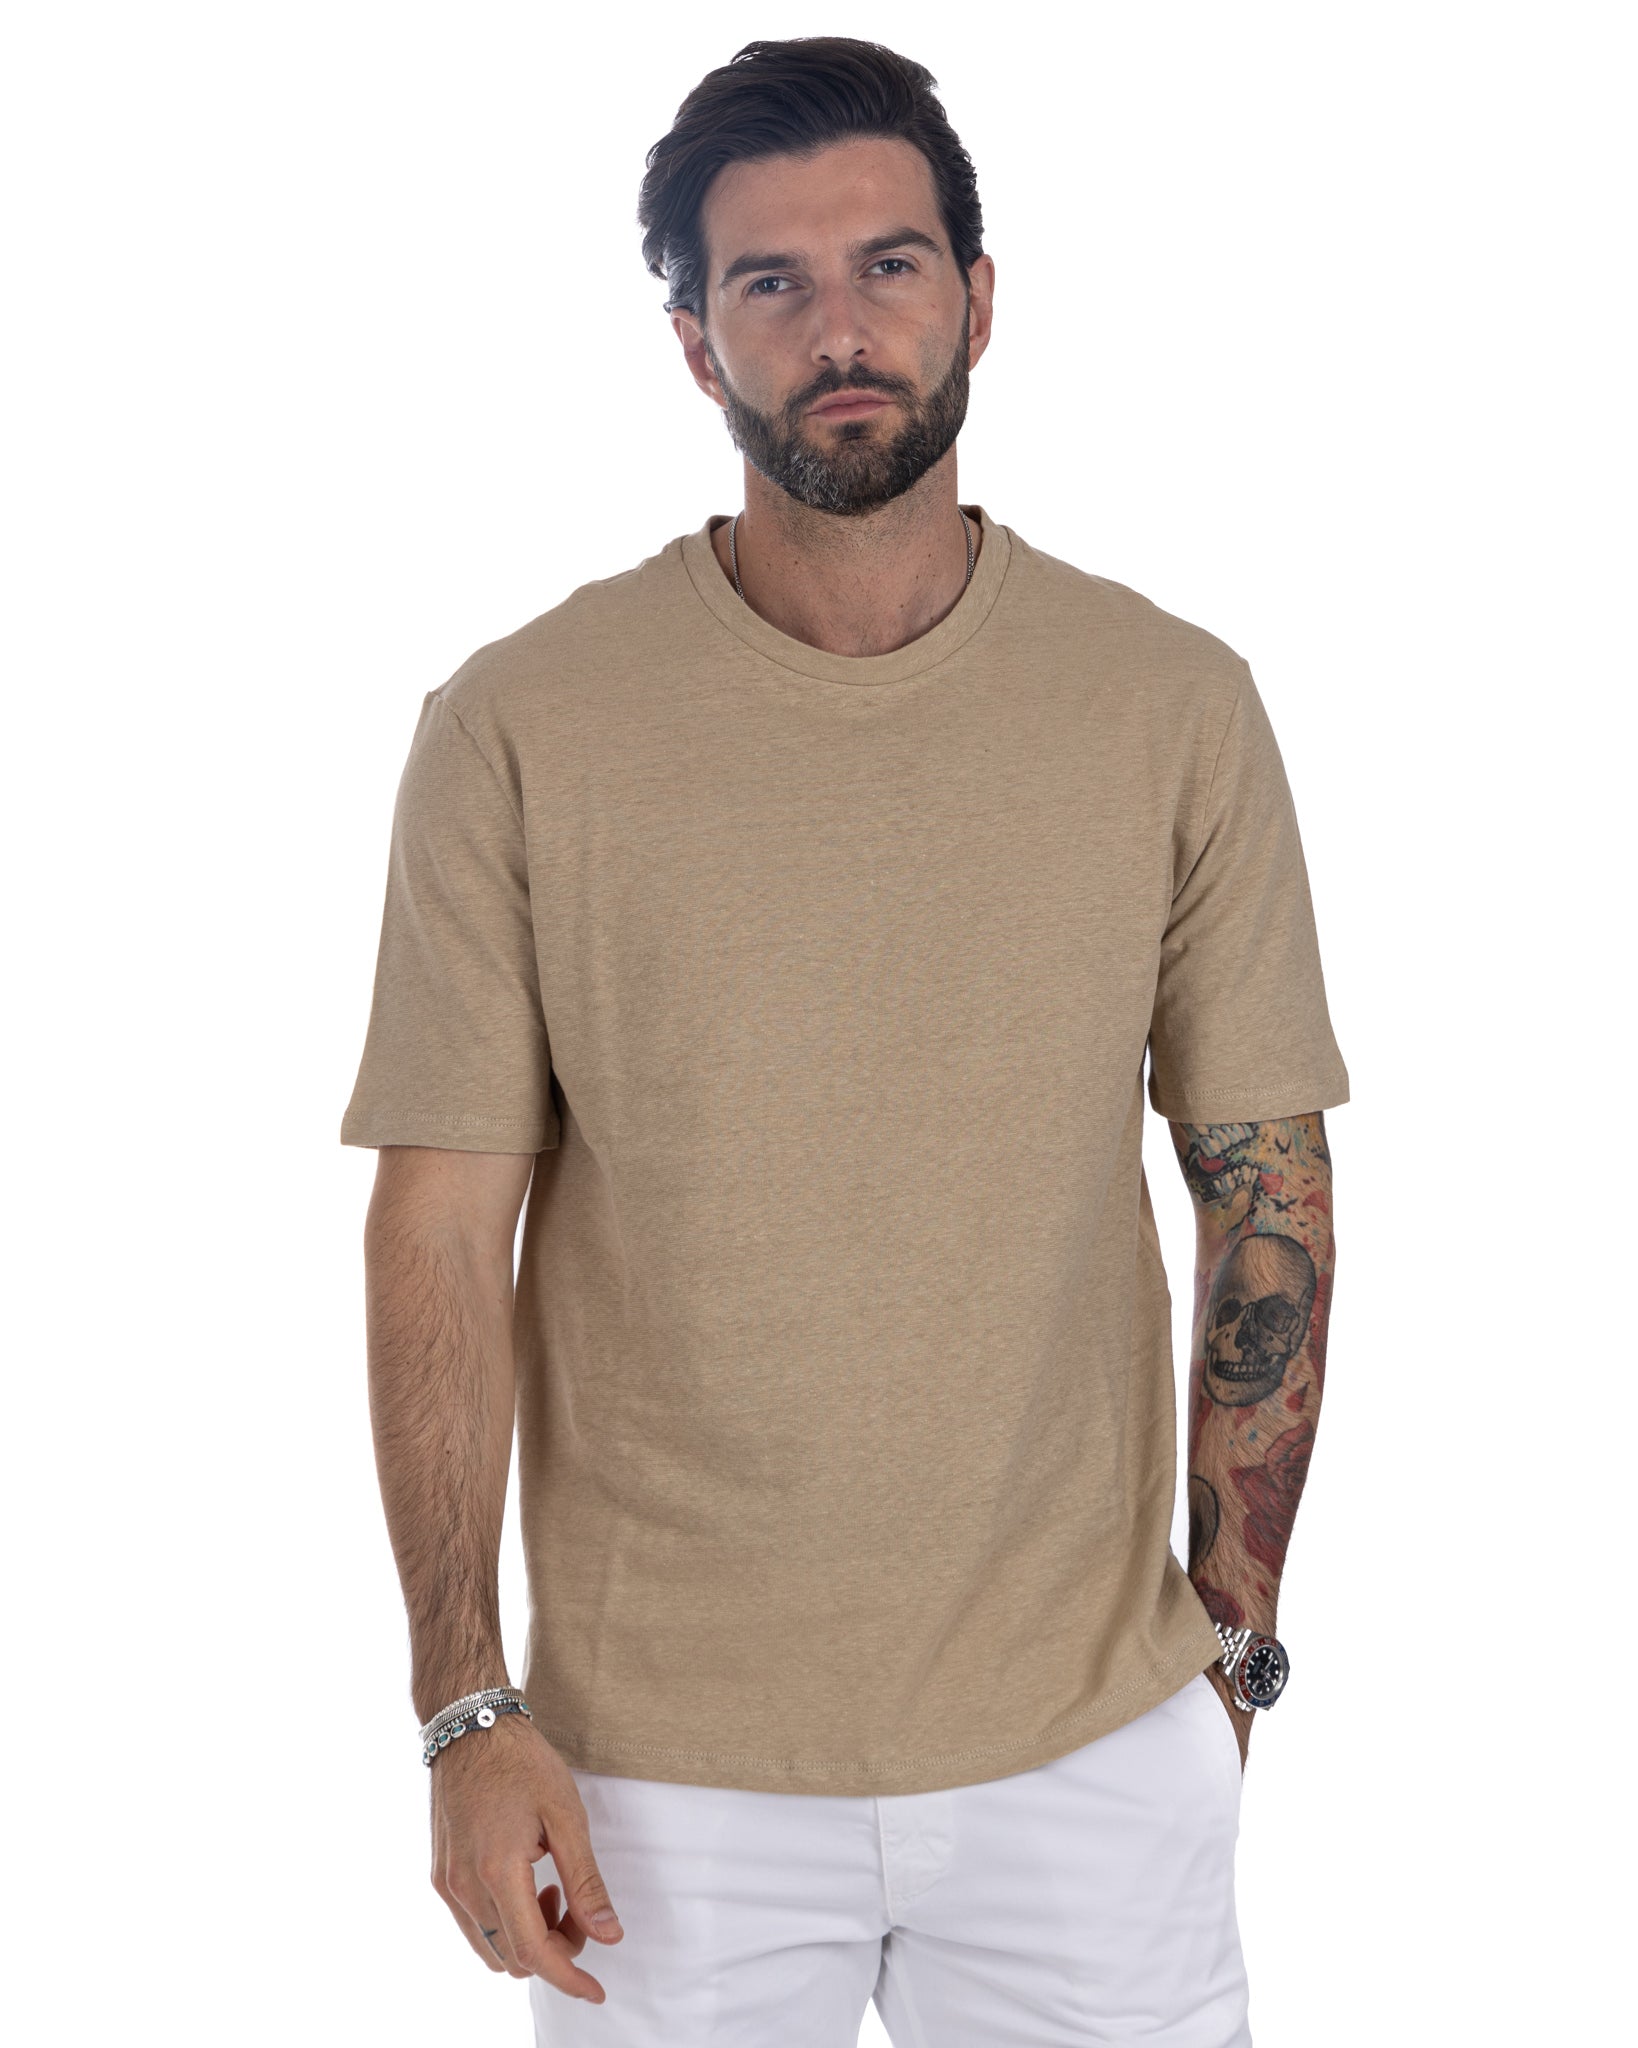 Favignana - beige linen t-shirt